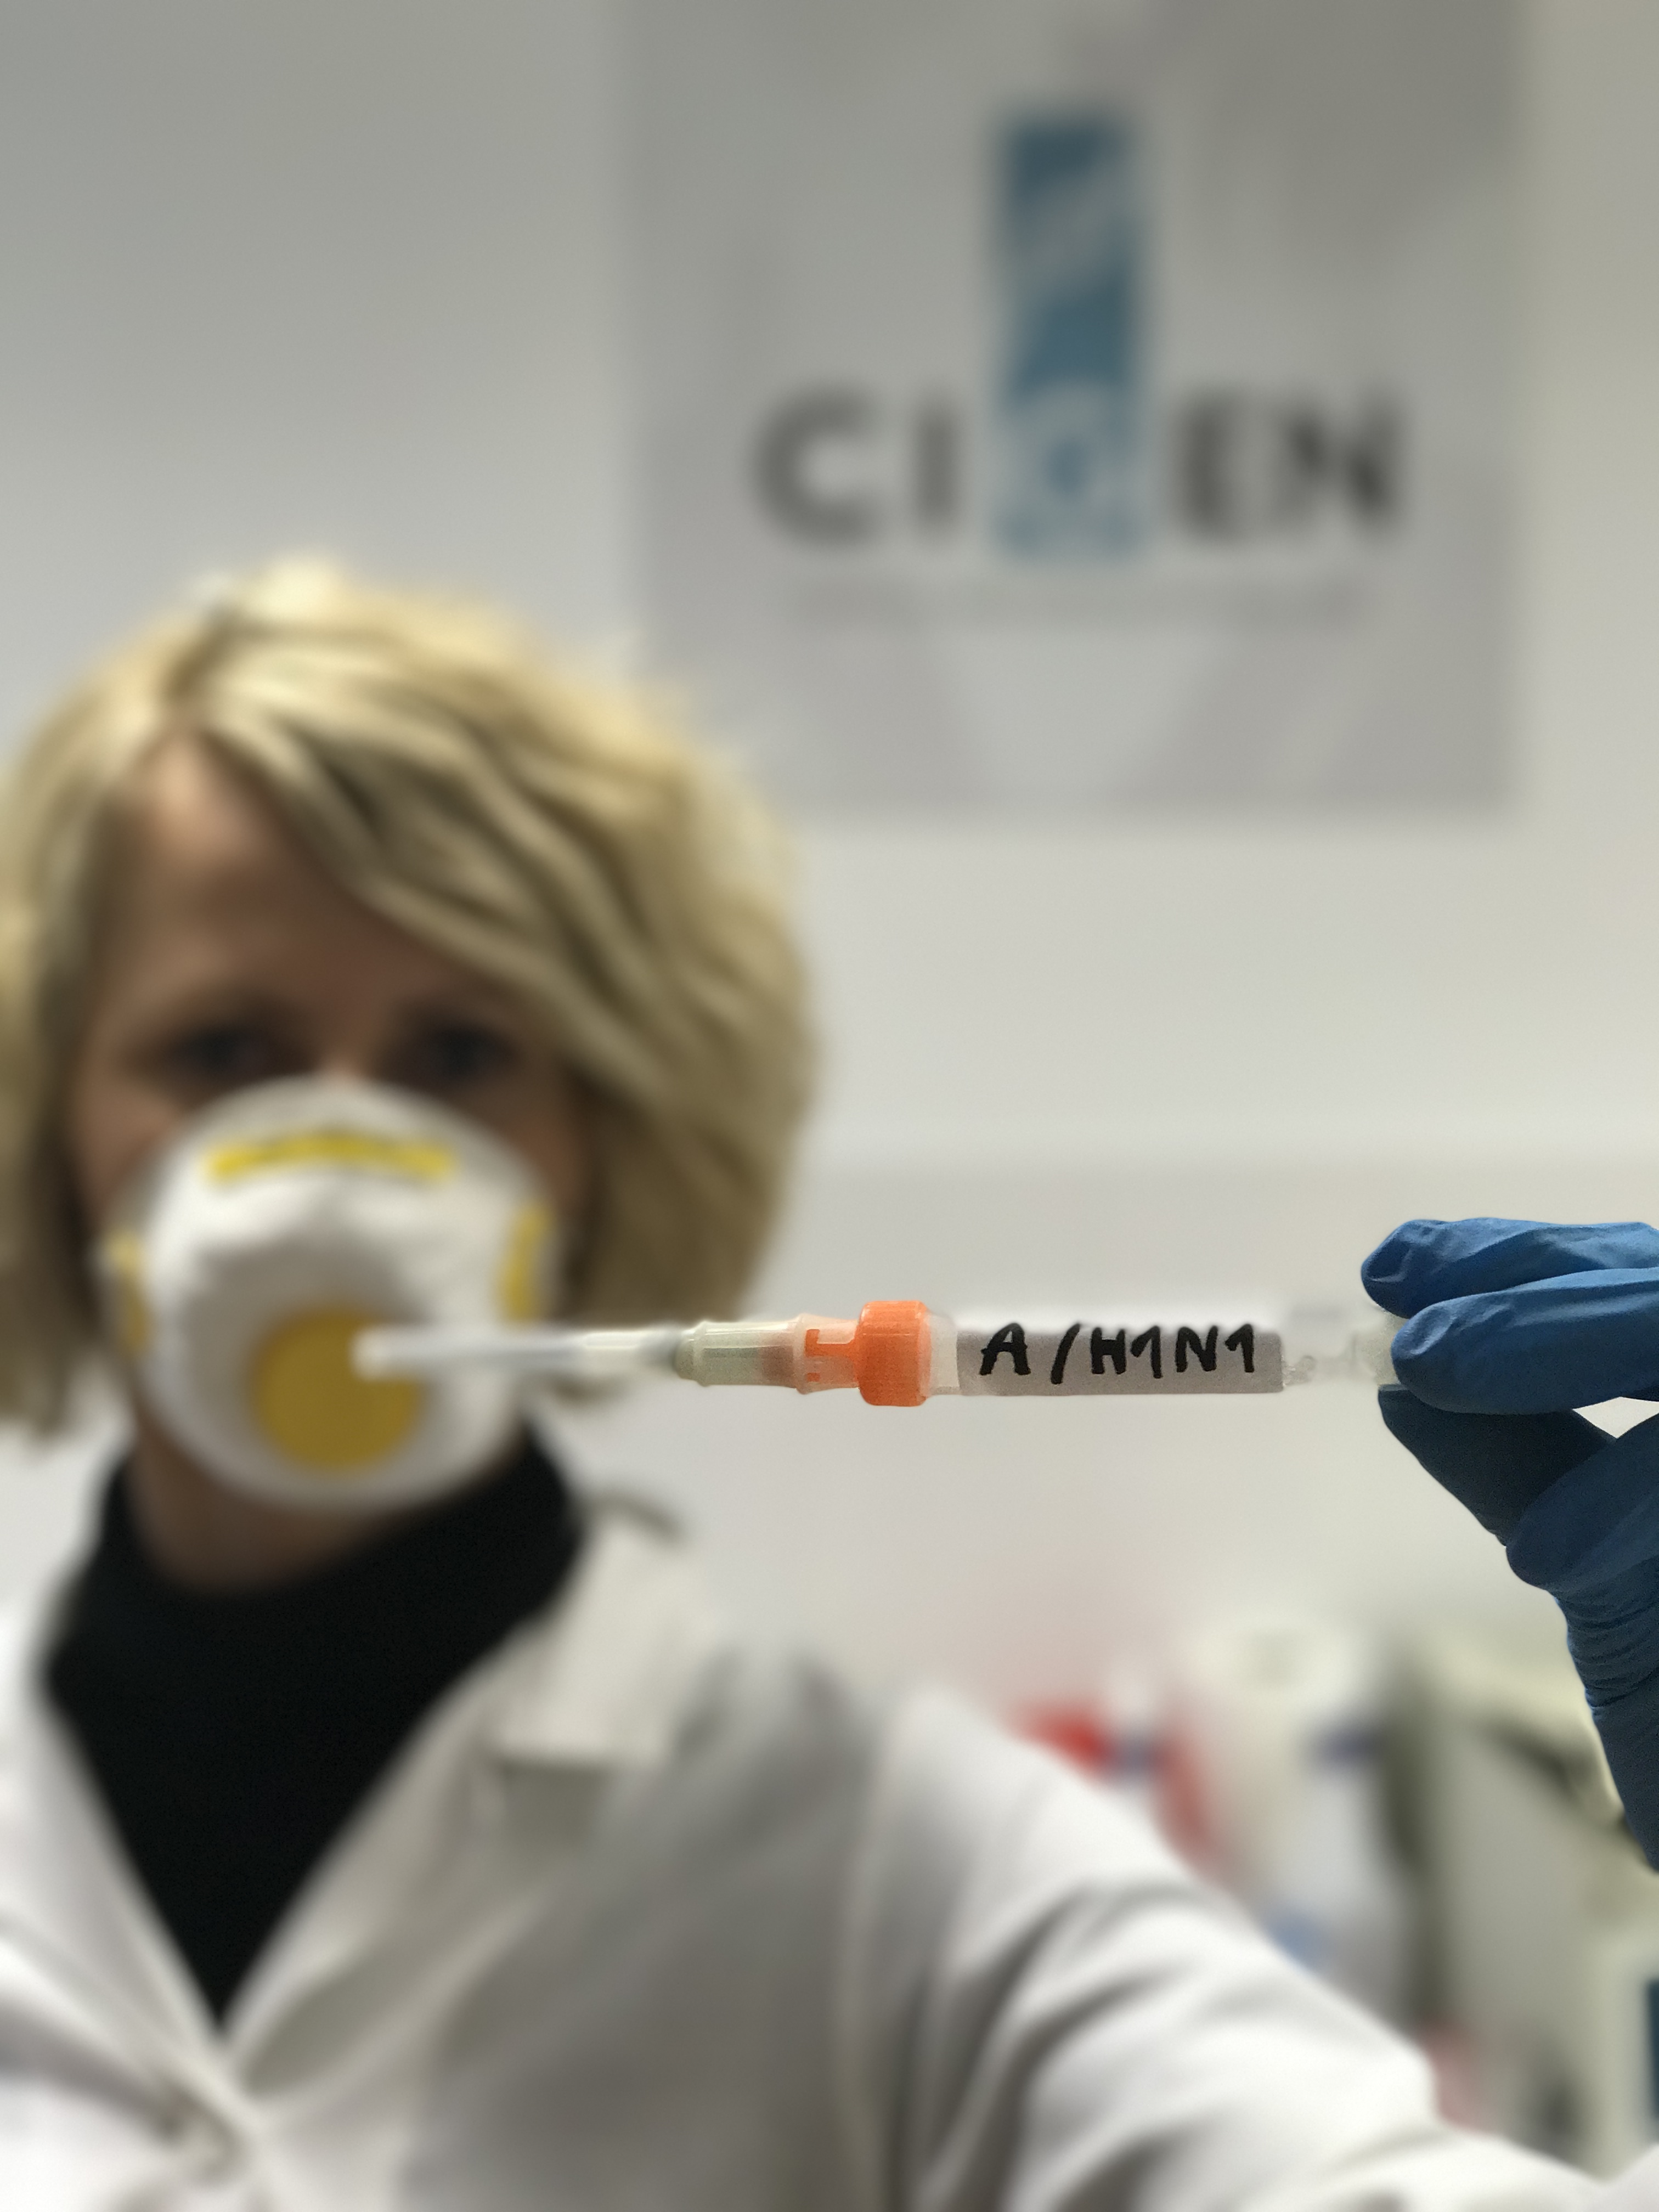 JUŻ DOSTĘPNE W OSTROWIE WIELKOPOLSKIM – BADANIE WIRUSA ŚWIŃSKIEJ GRYPY A/H1N1